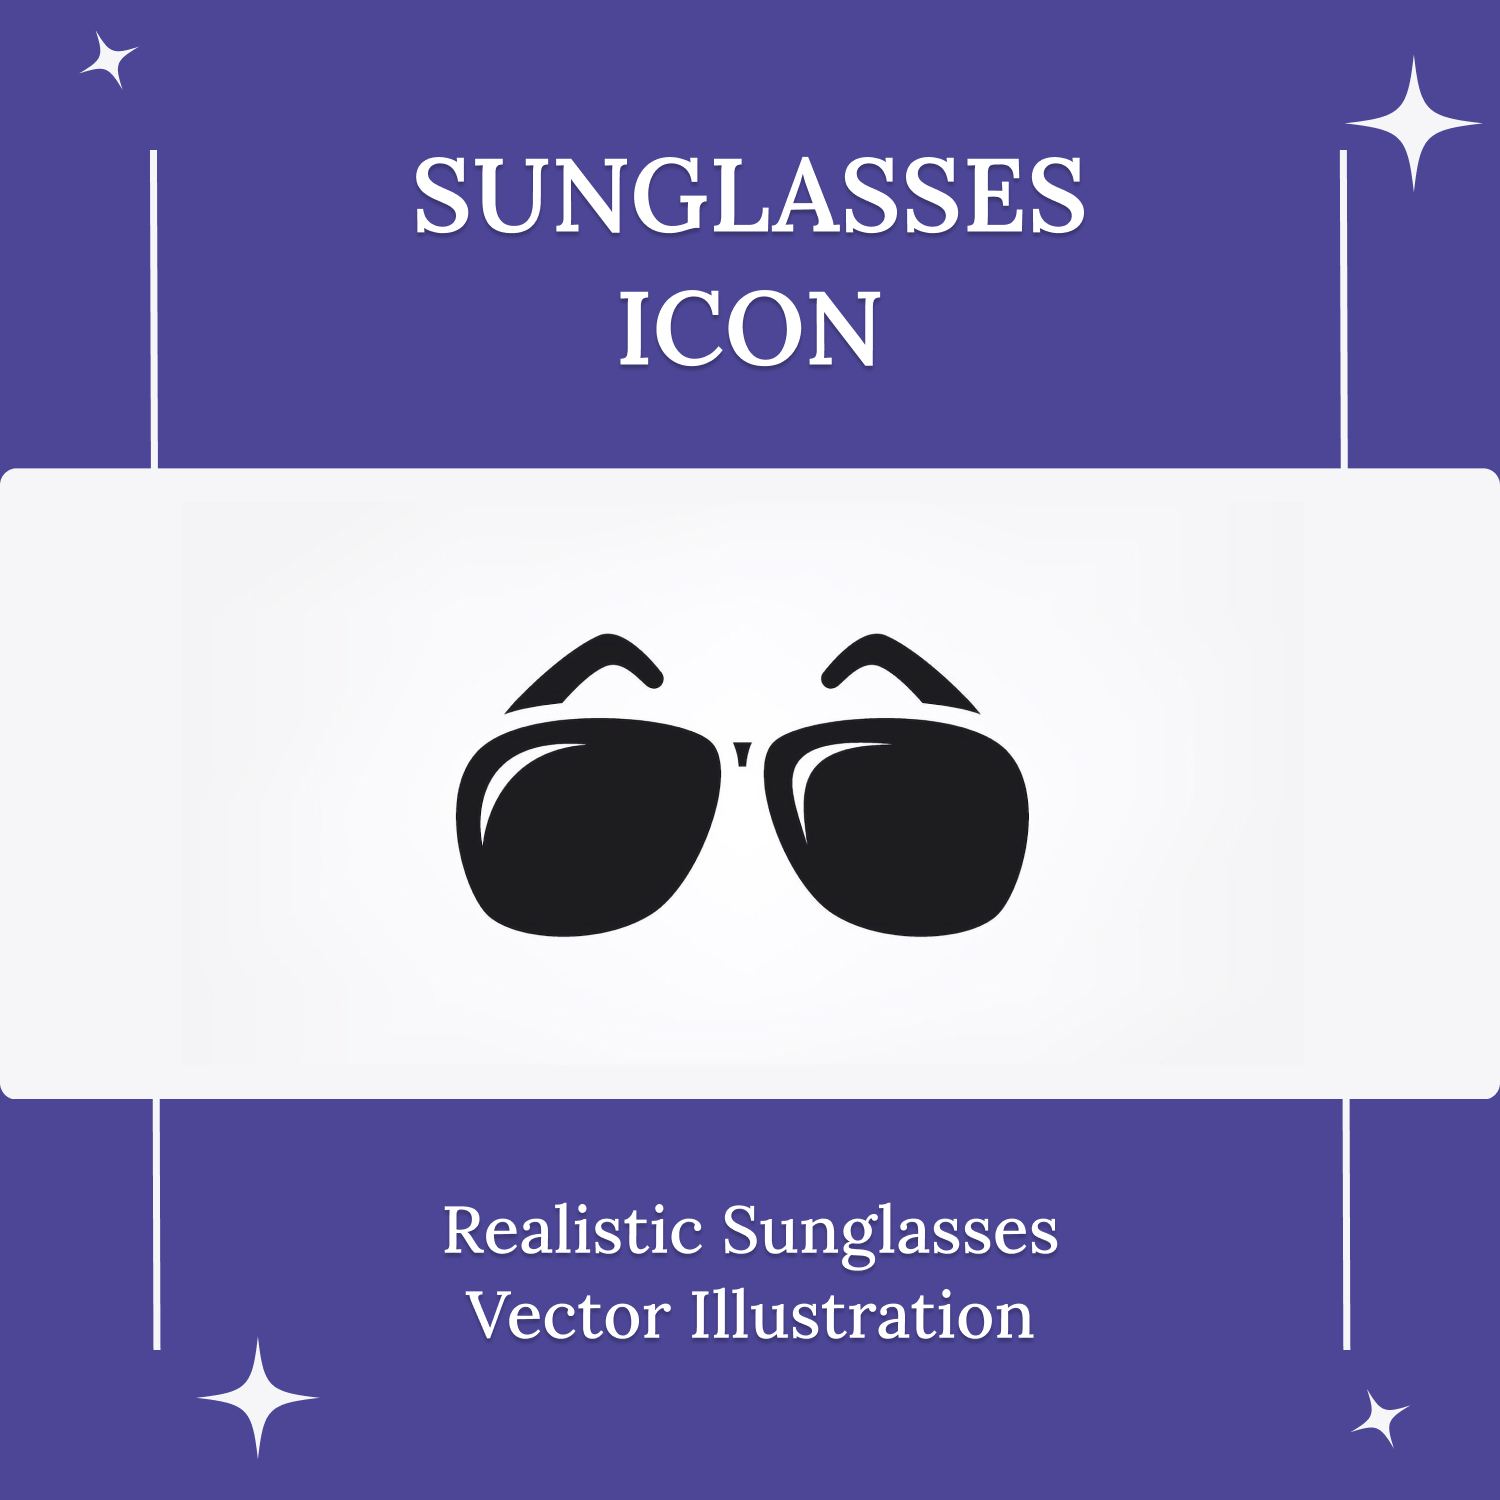 Sunglasses Icon Main Cover.